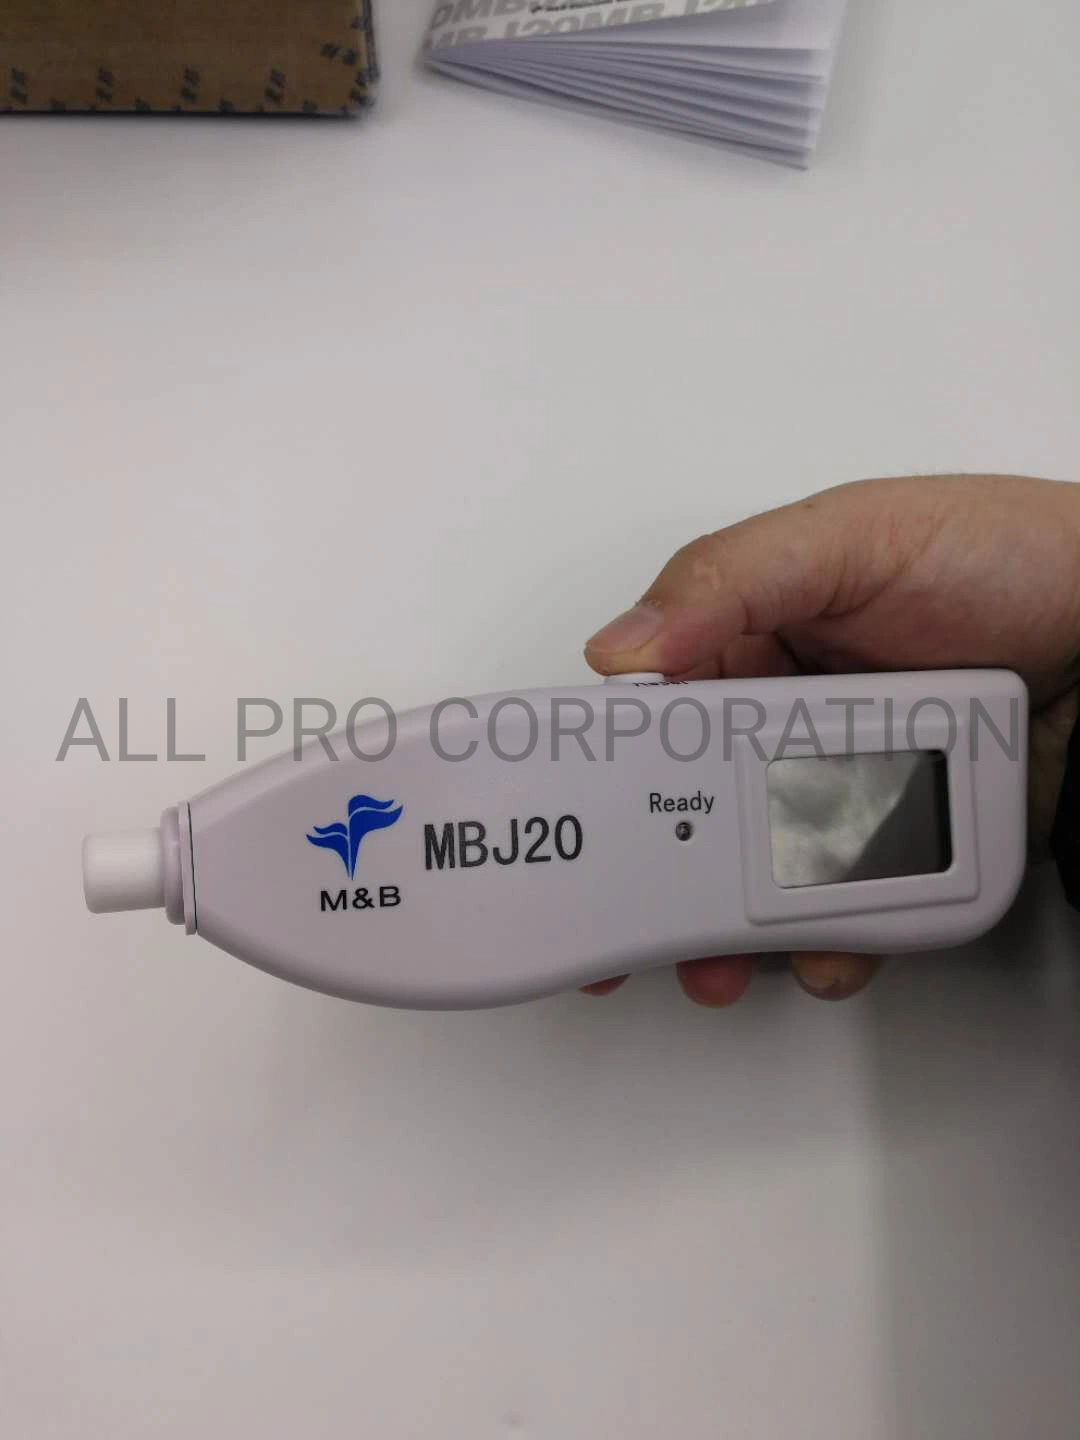 Mbj20 Cheaper Price Neonatal Transcutaneous Bilirubinometer Bilirubin Jaundice Detector